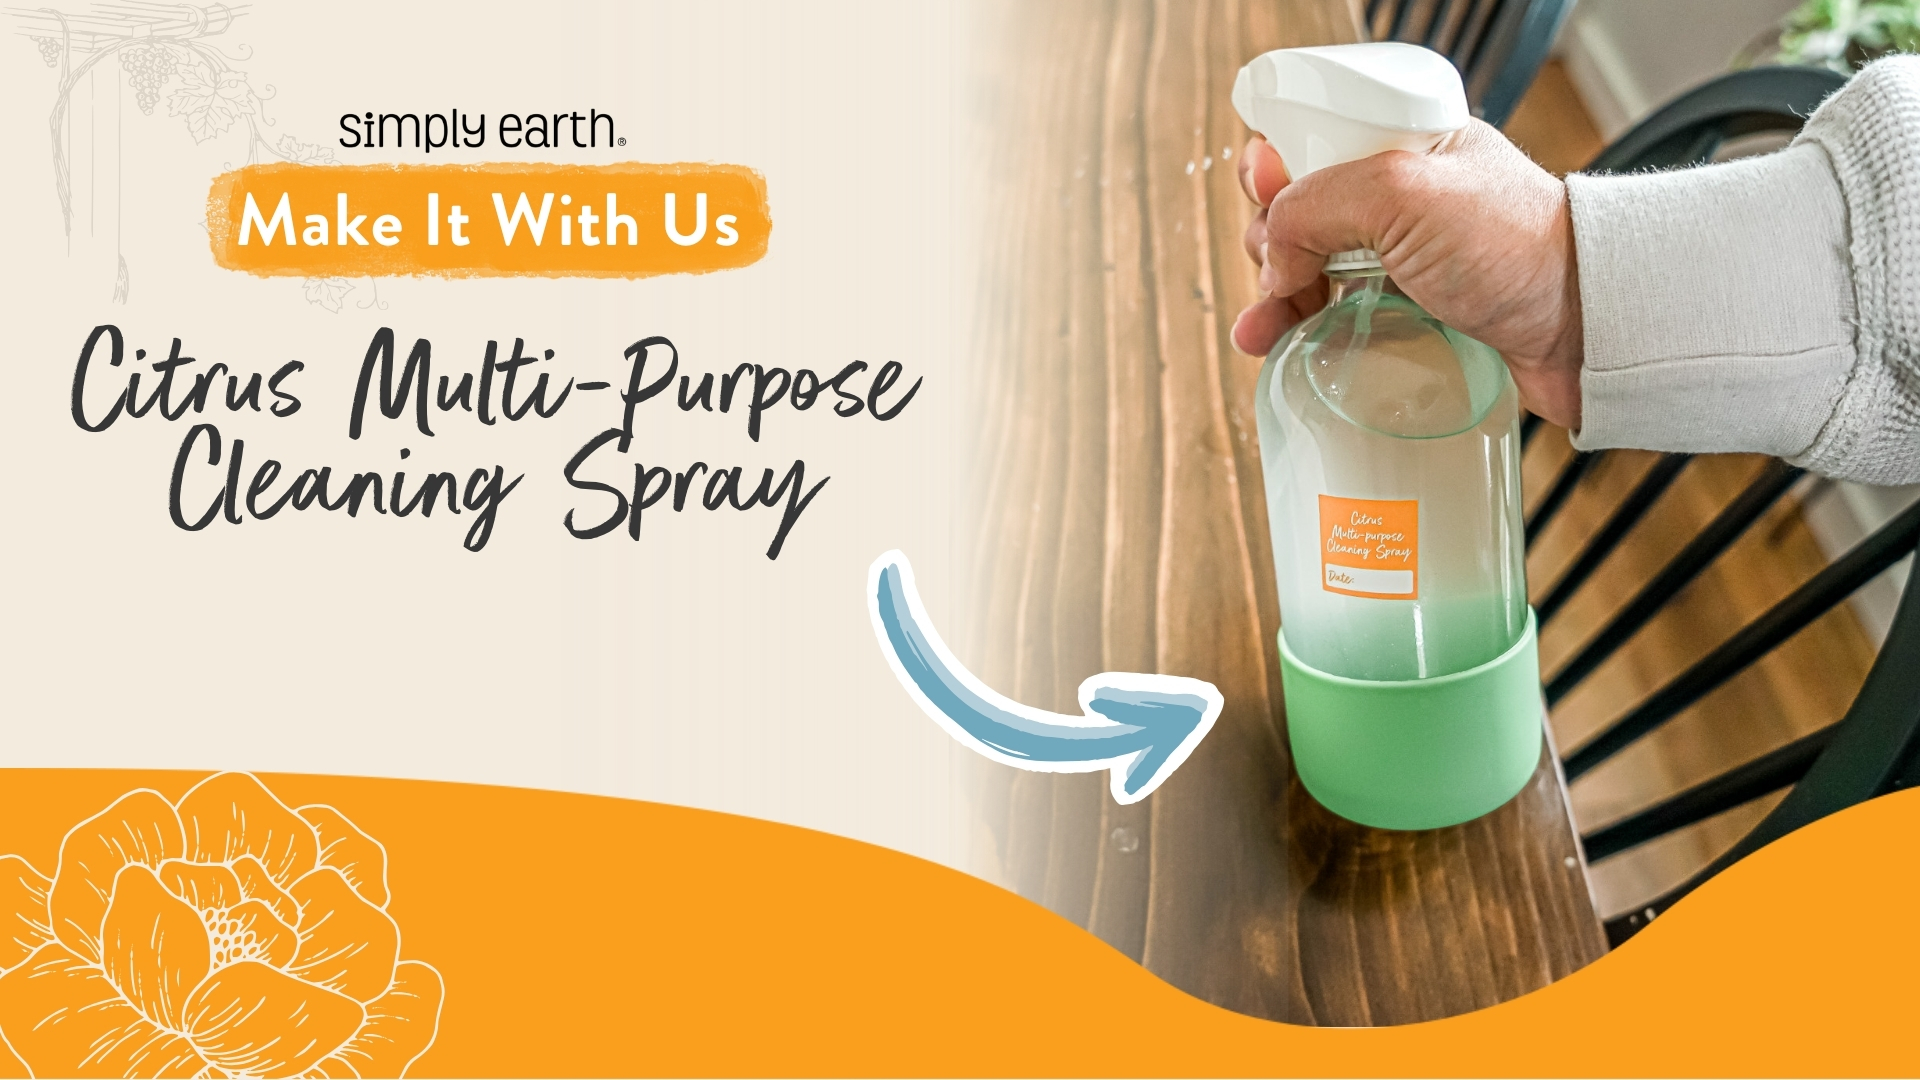 Citrus Multi-Purpose Cleaning Spray